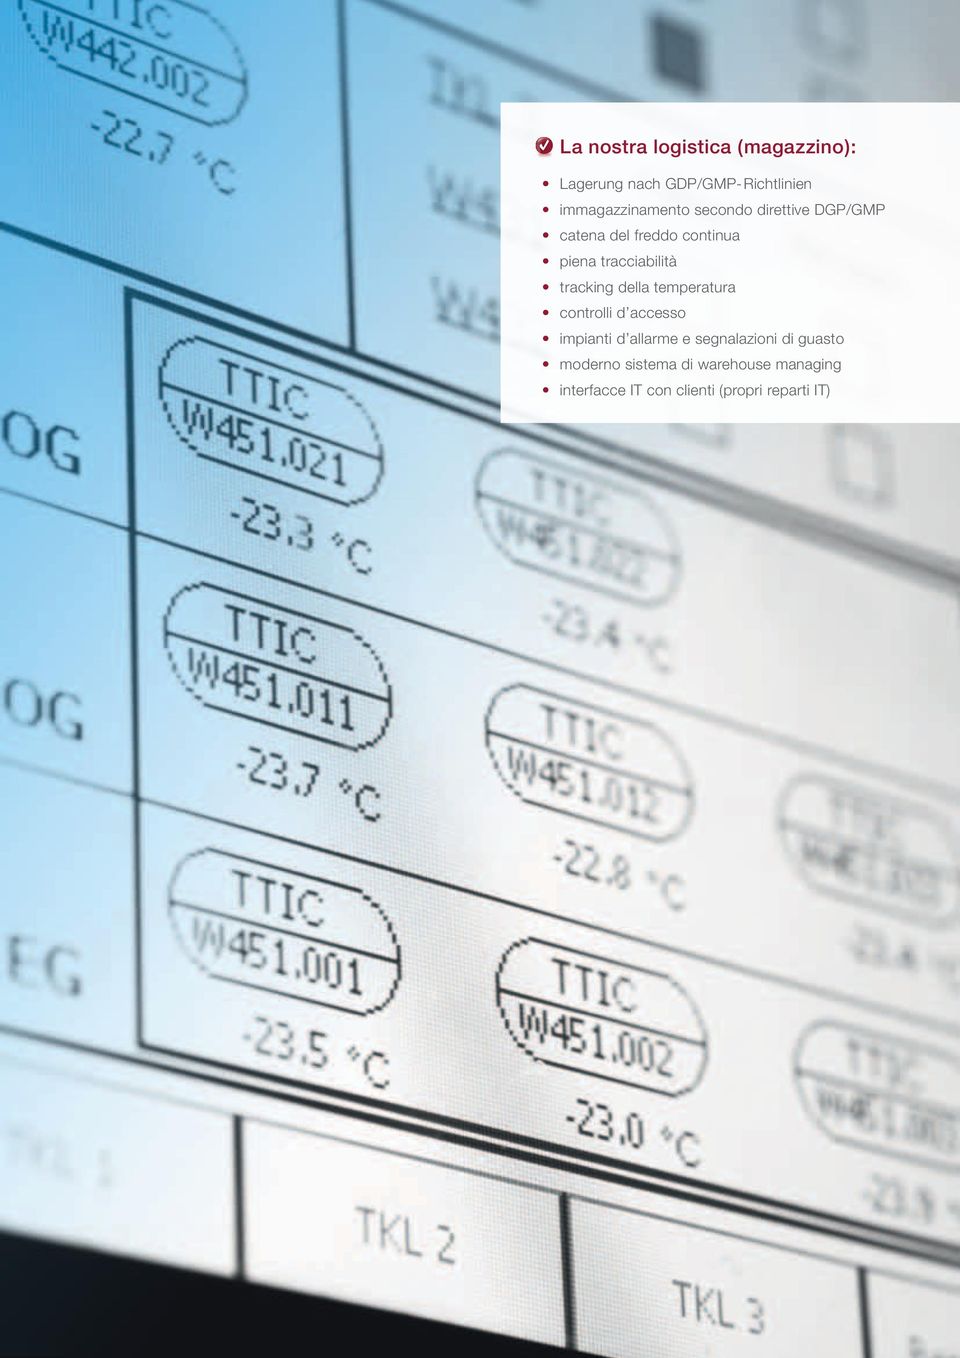 tracciabilità tracking della temperatura controlli d accesso impianti d allarme e